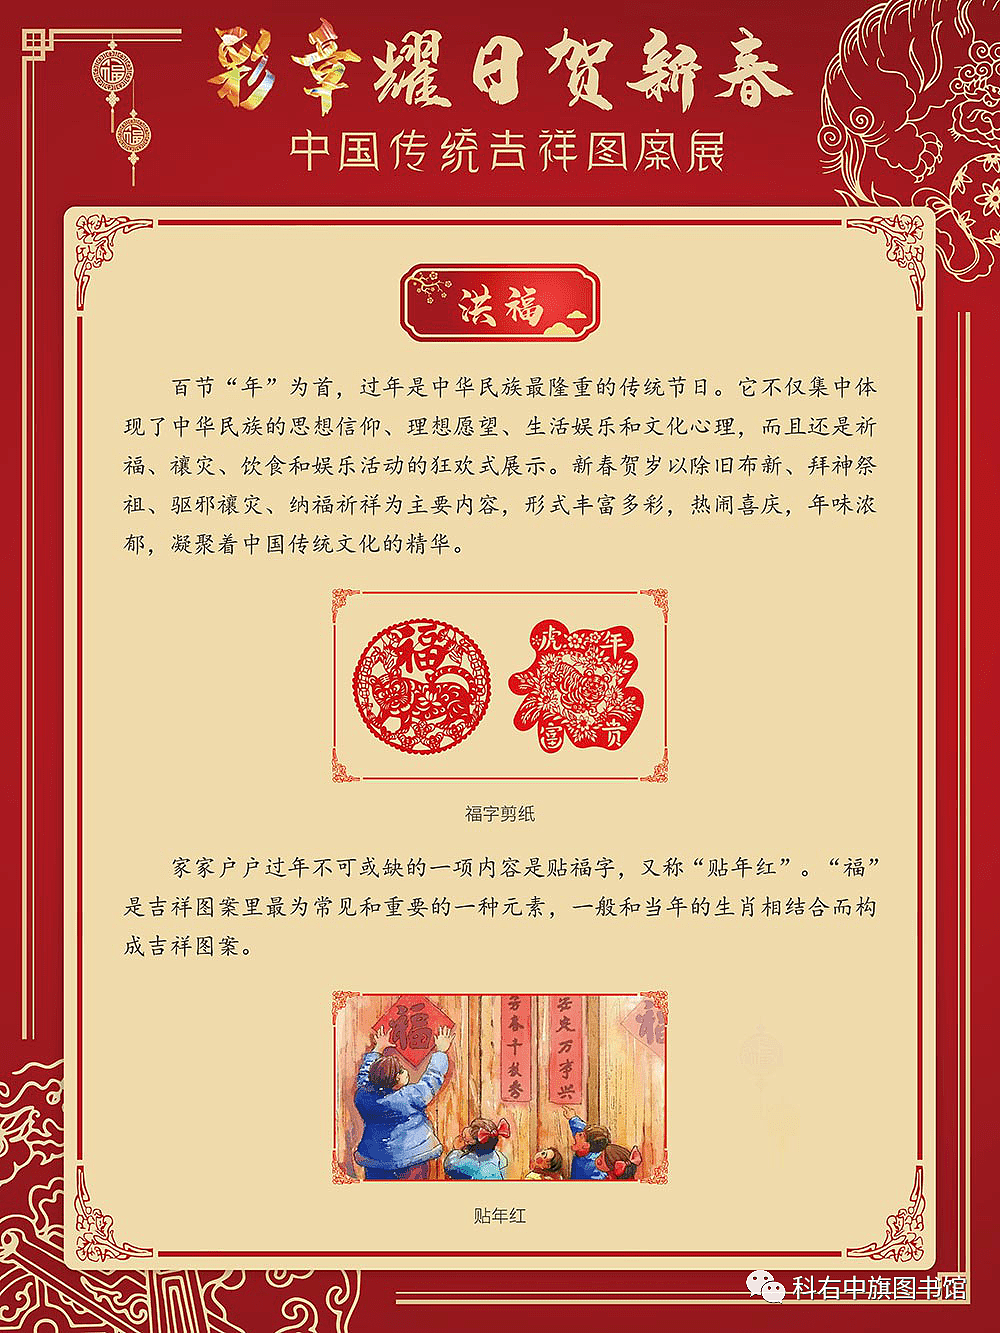 科尔沁右翼中旗图书馆线上展览丨彩章耀日贺新春——中国传统吉祥图案展 - 3